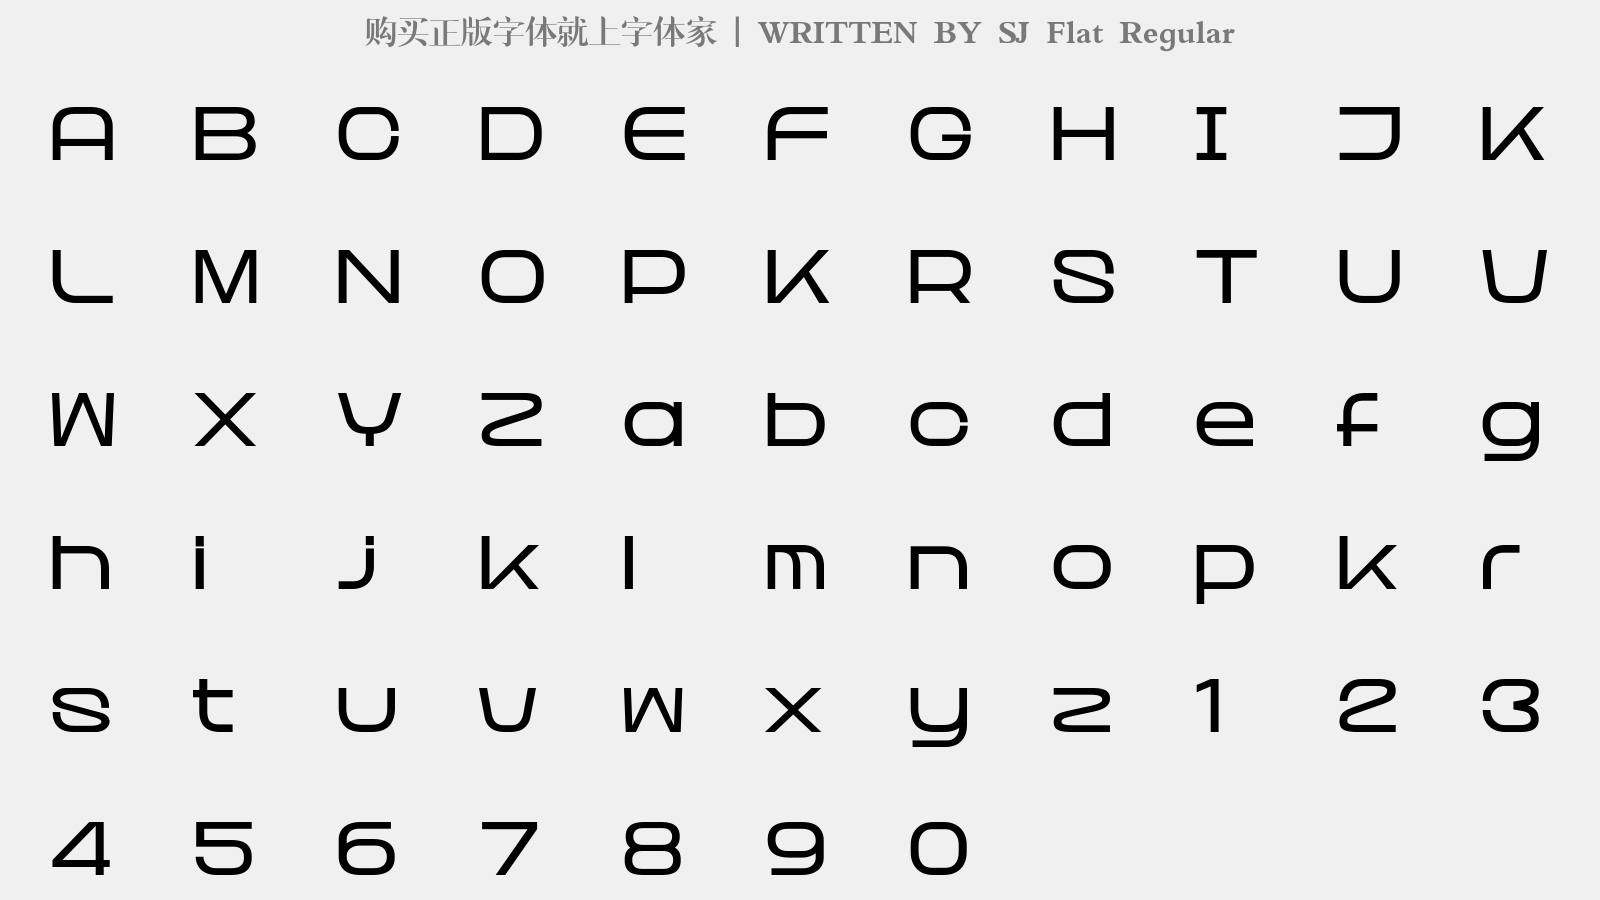 SJ Flat Regular - 大写字母/小写字母/数字